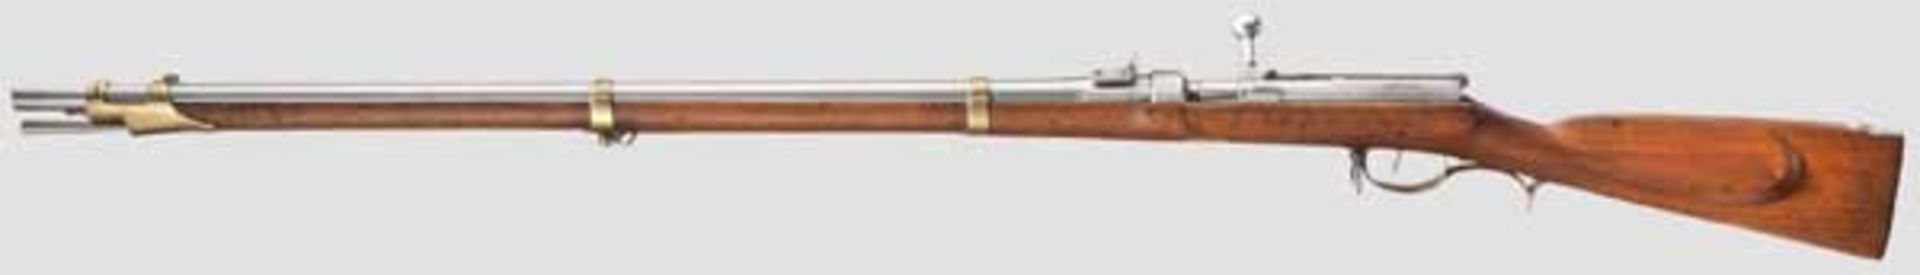 Zündnadelgewehr M 1841, 2. Fertigungsperiode Kaliber 15,4 mm, Nummer 3136 vor der Hülse und auf - Bild 2 aus 4